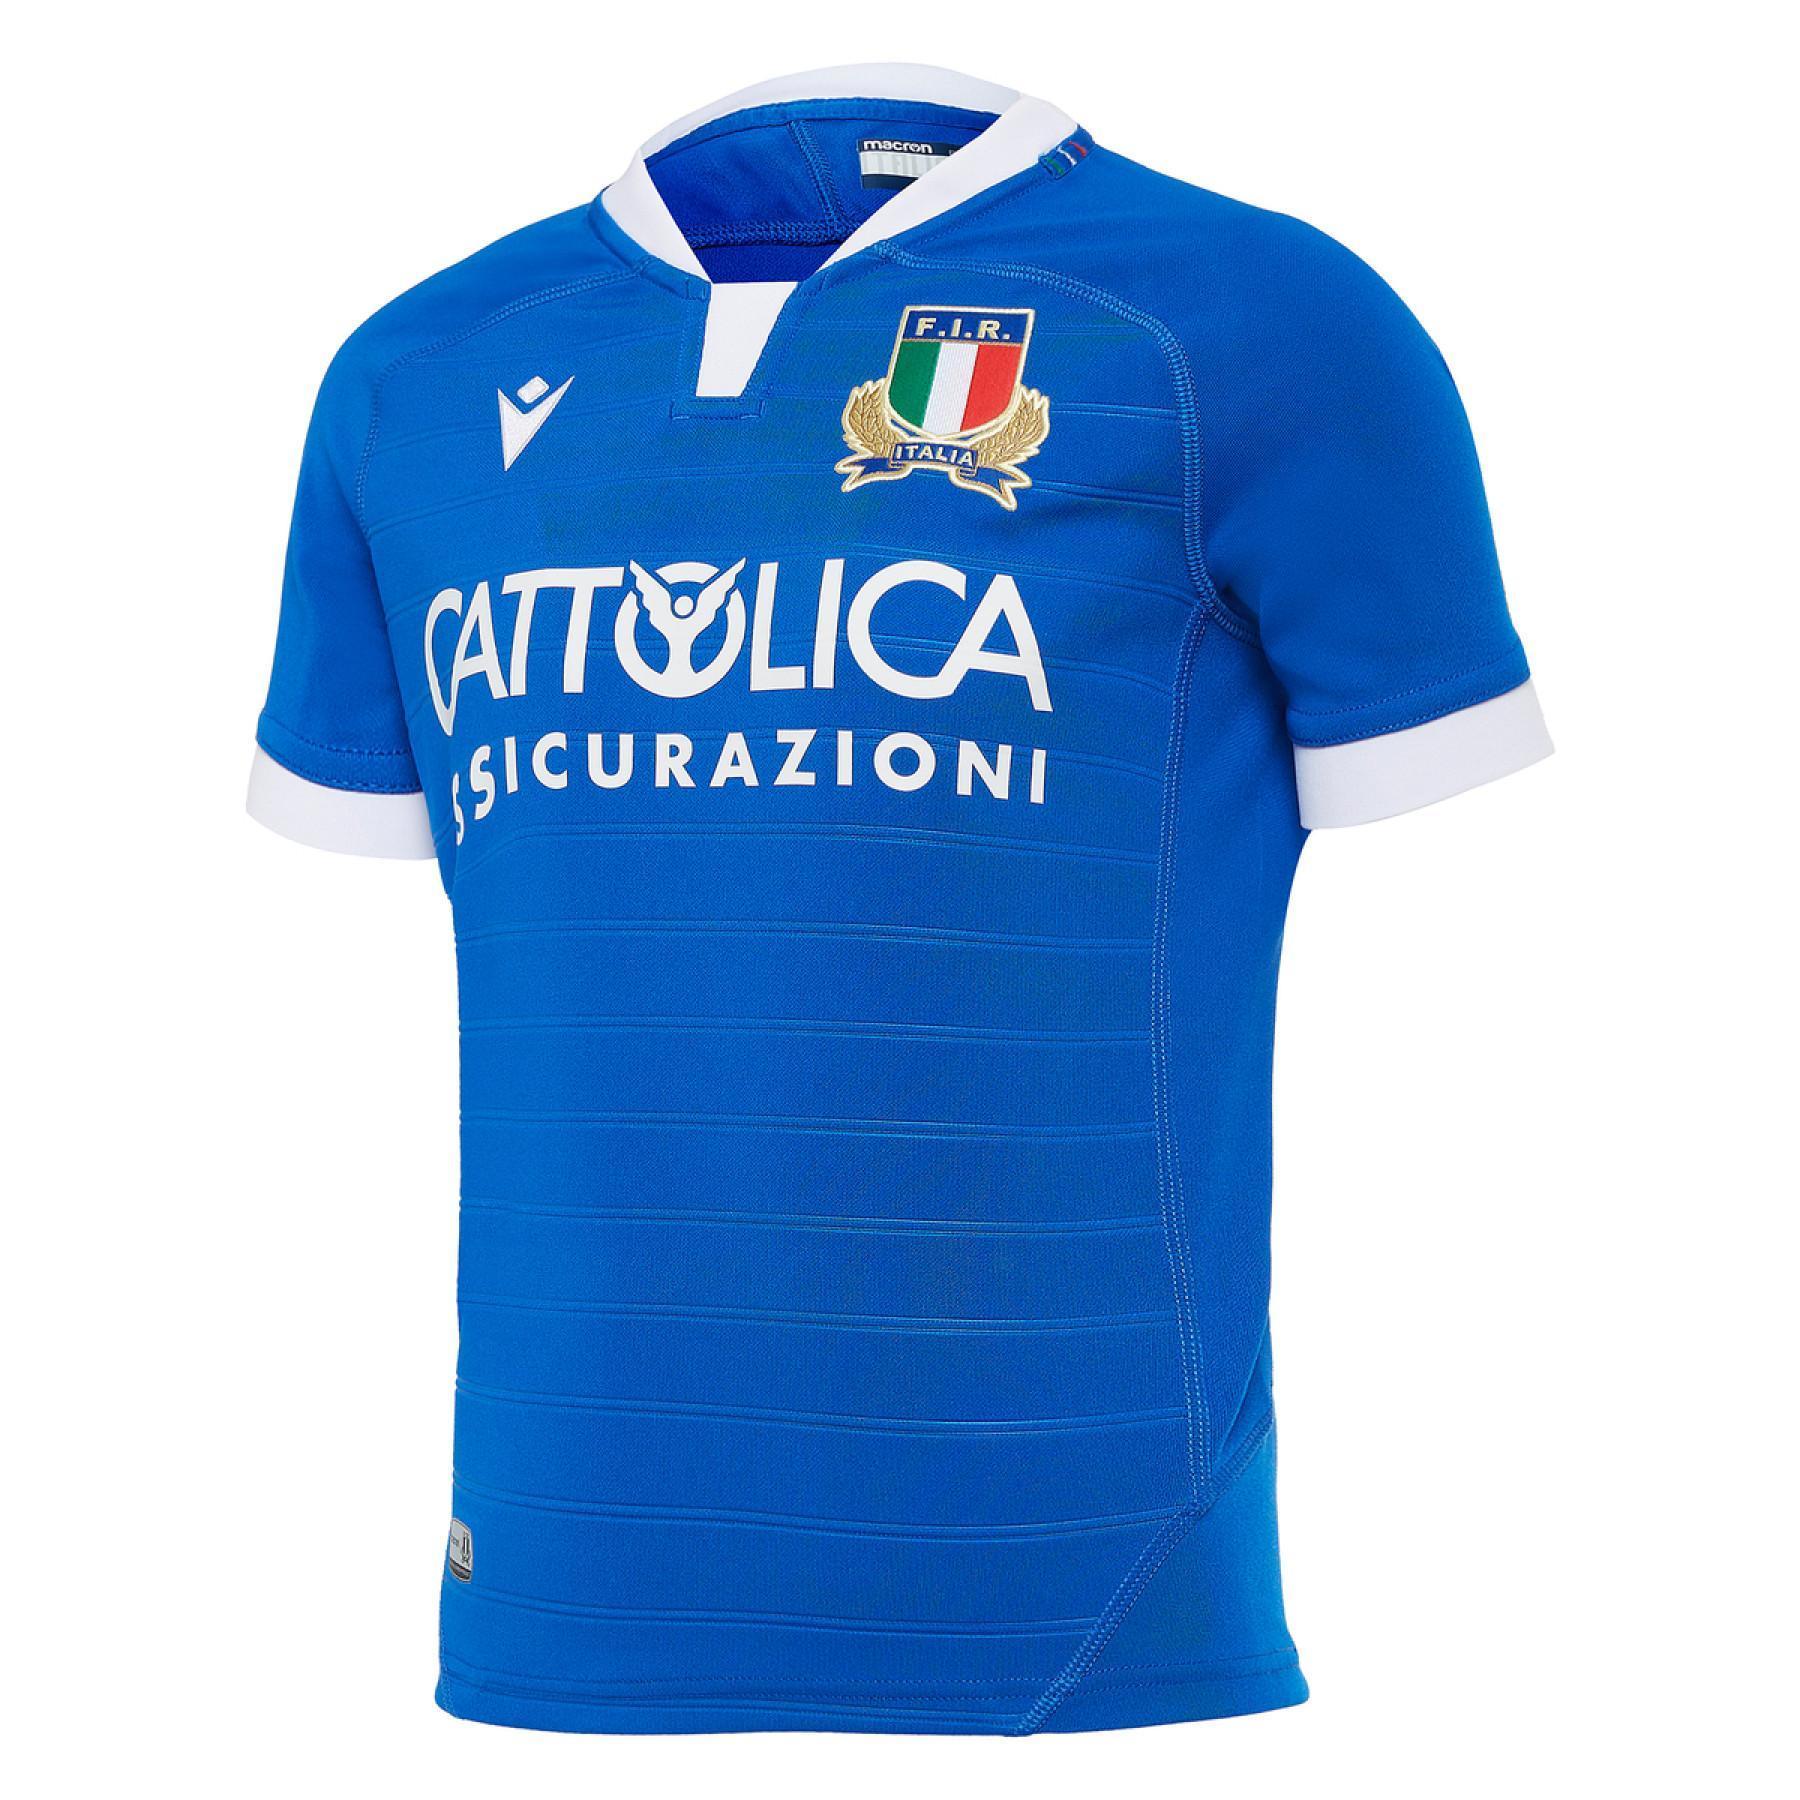 Dom dziecka jersey italie rugby 2020/21